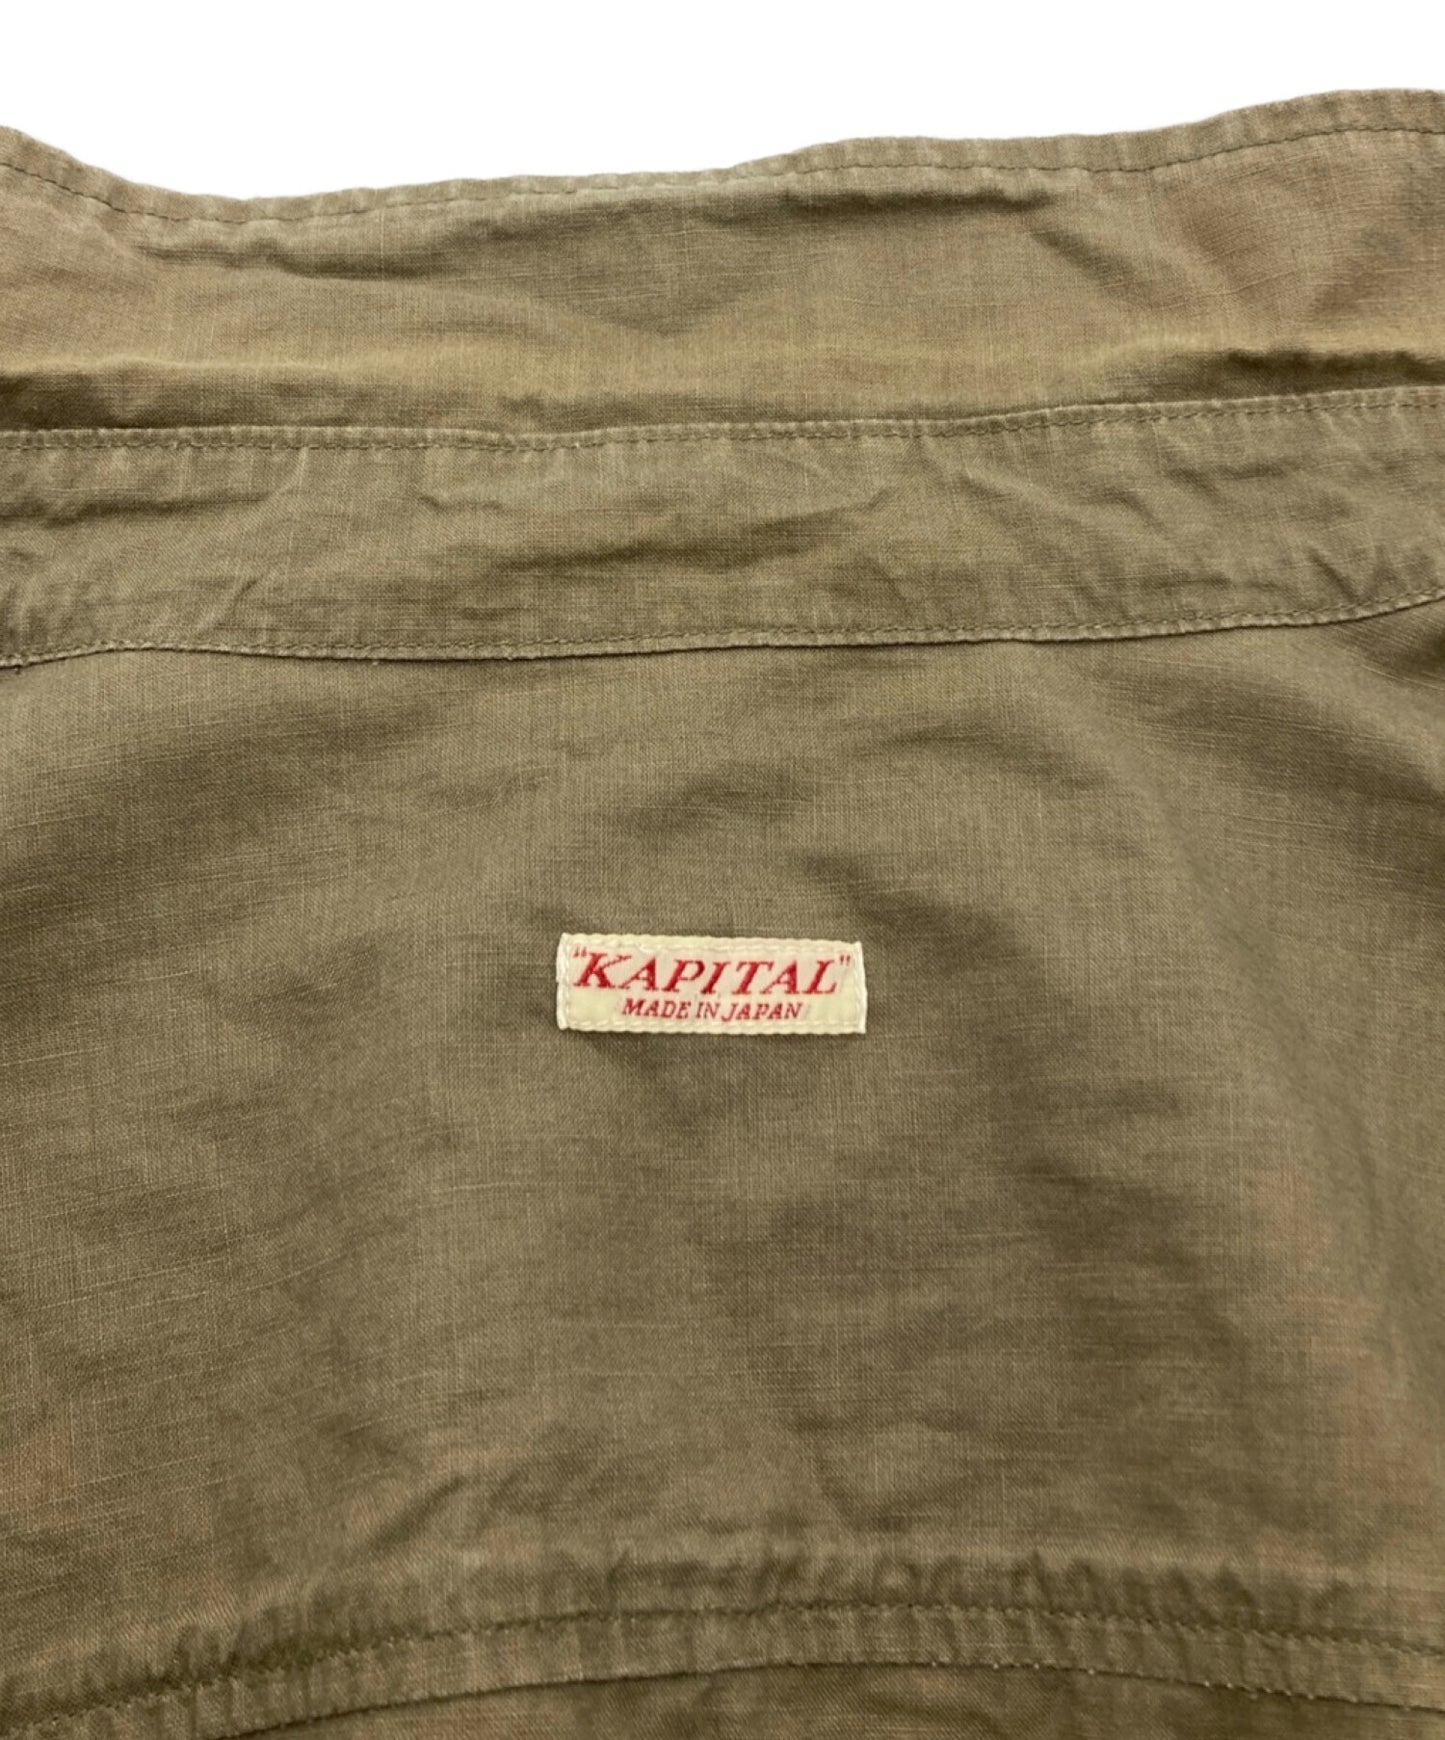 Kapital Cotton Slappy 셔츠 코트/긴 셔츠